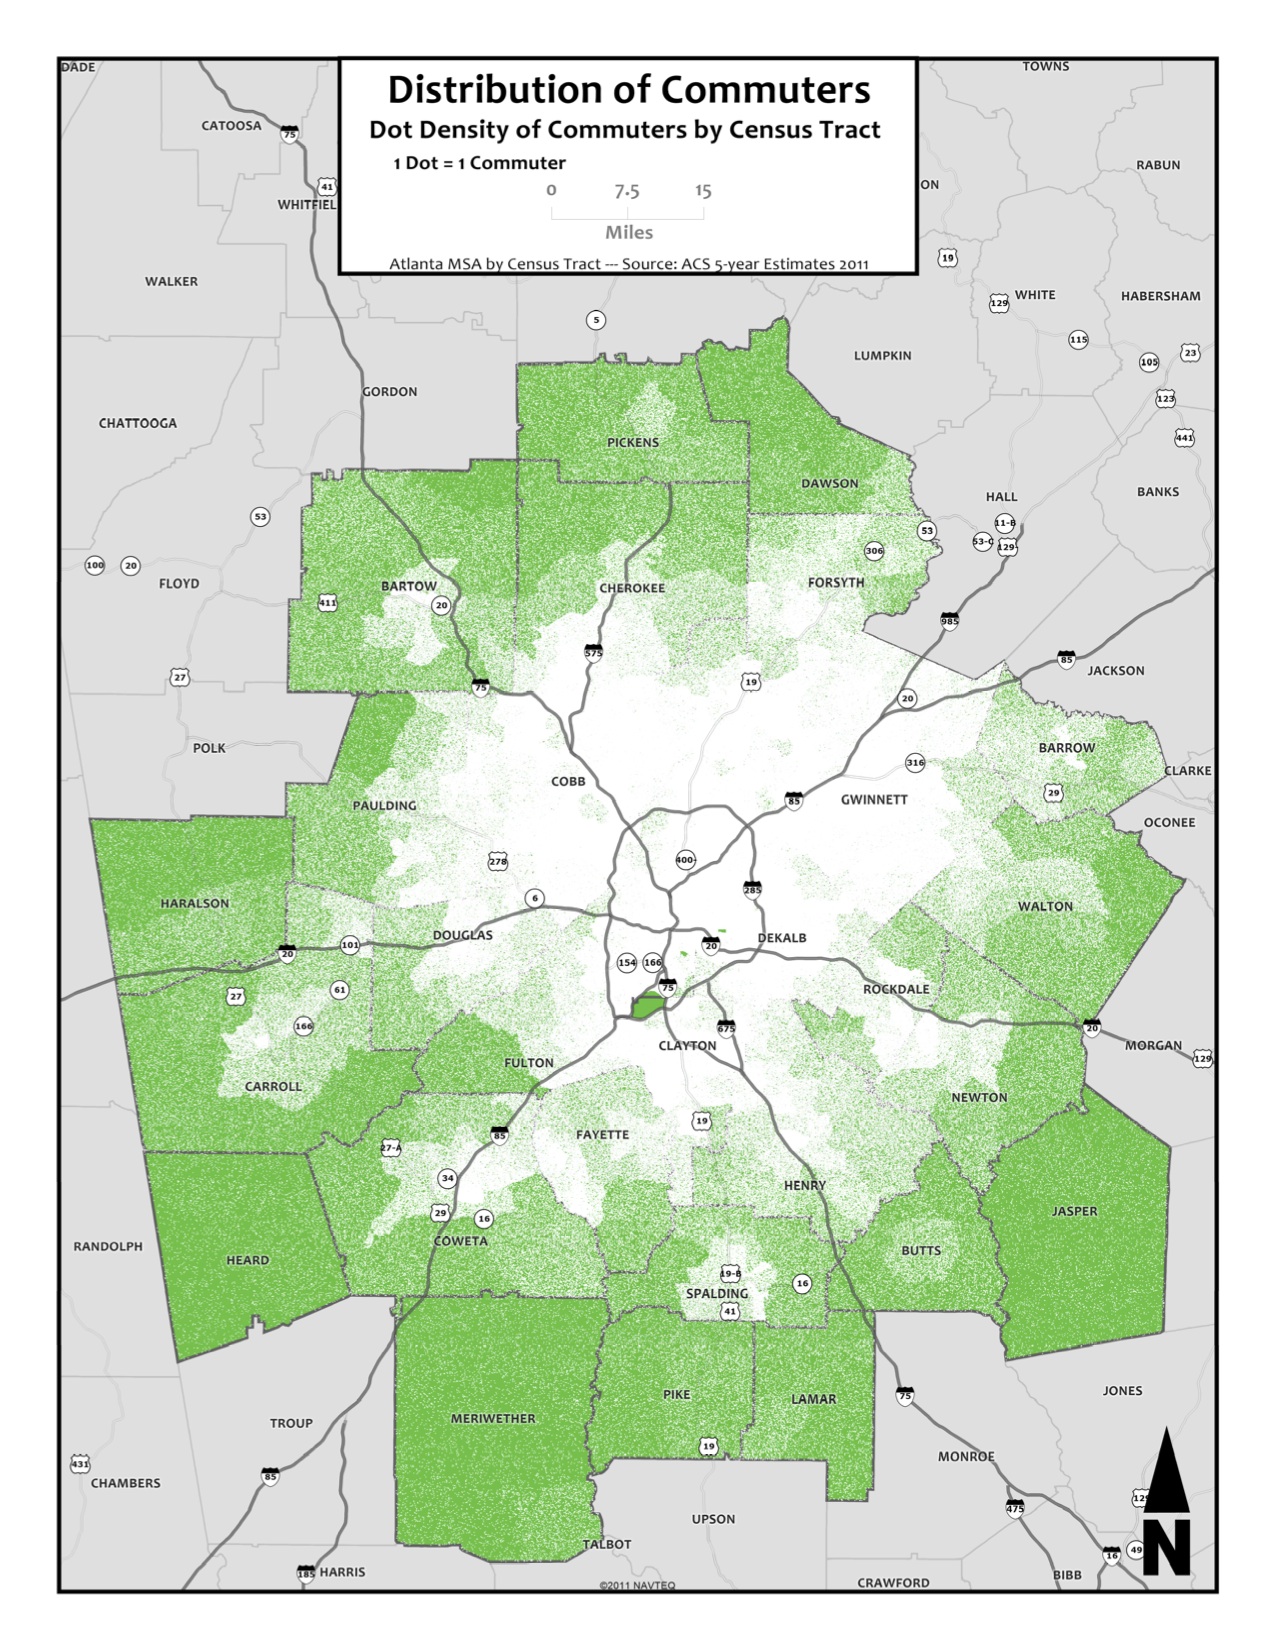 Distribution of Commuters by Dot Density (Dot=1)